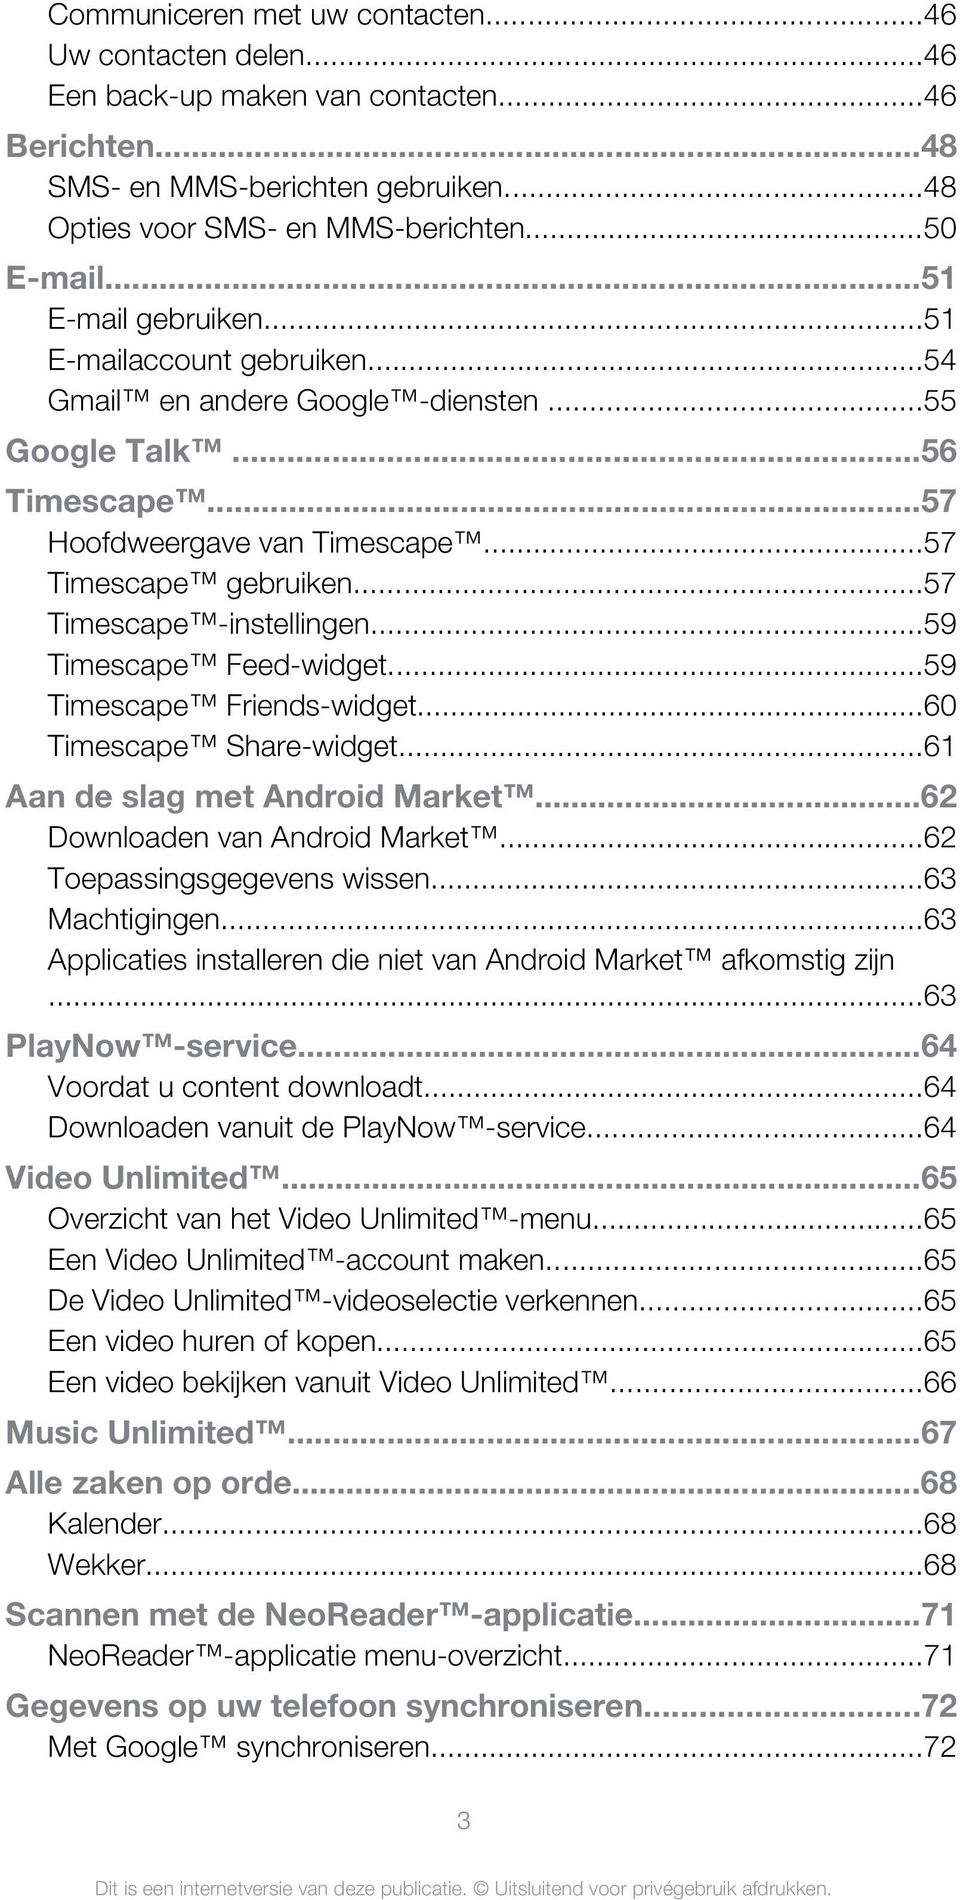 ..57 Timescape -instellingen...59 Timescape Feed-widget...59 Timescape Friends-widget...60 Timescape Share-widget...61 Aan de slag met Android Market...62 Downloaden van Android Market.